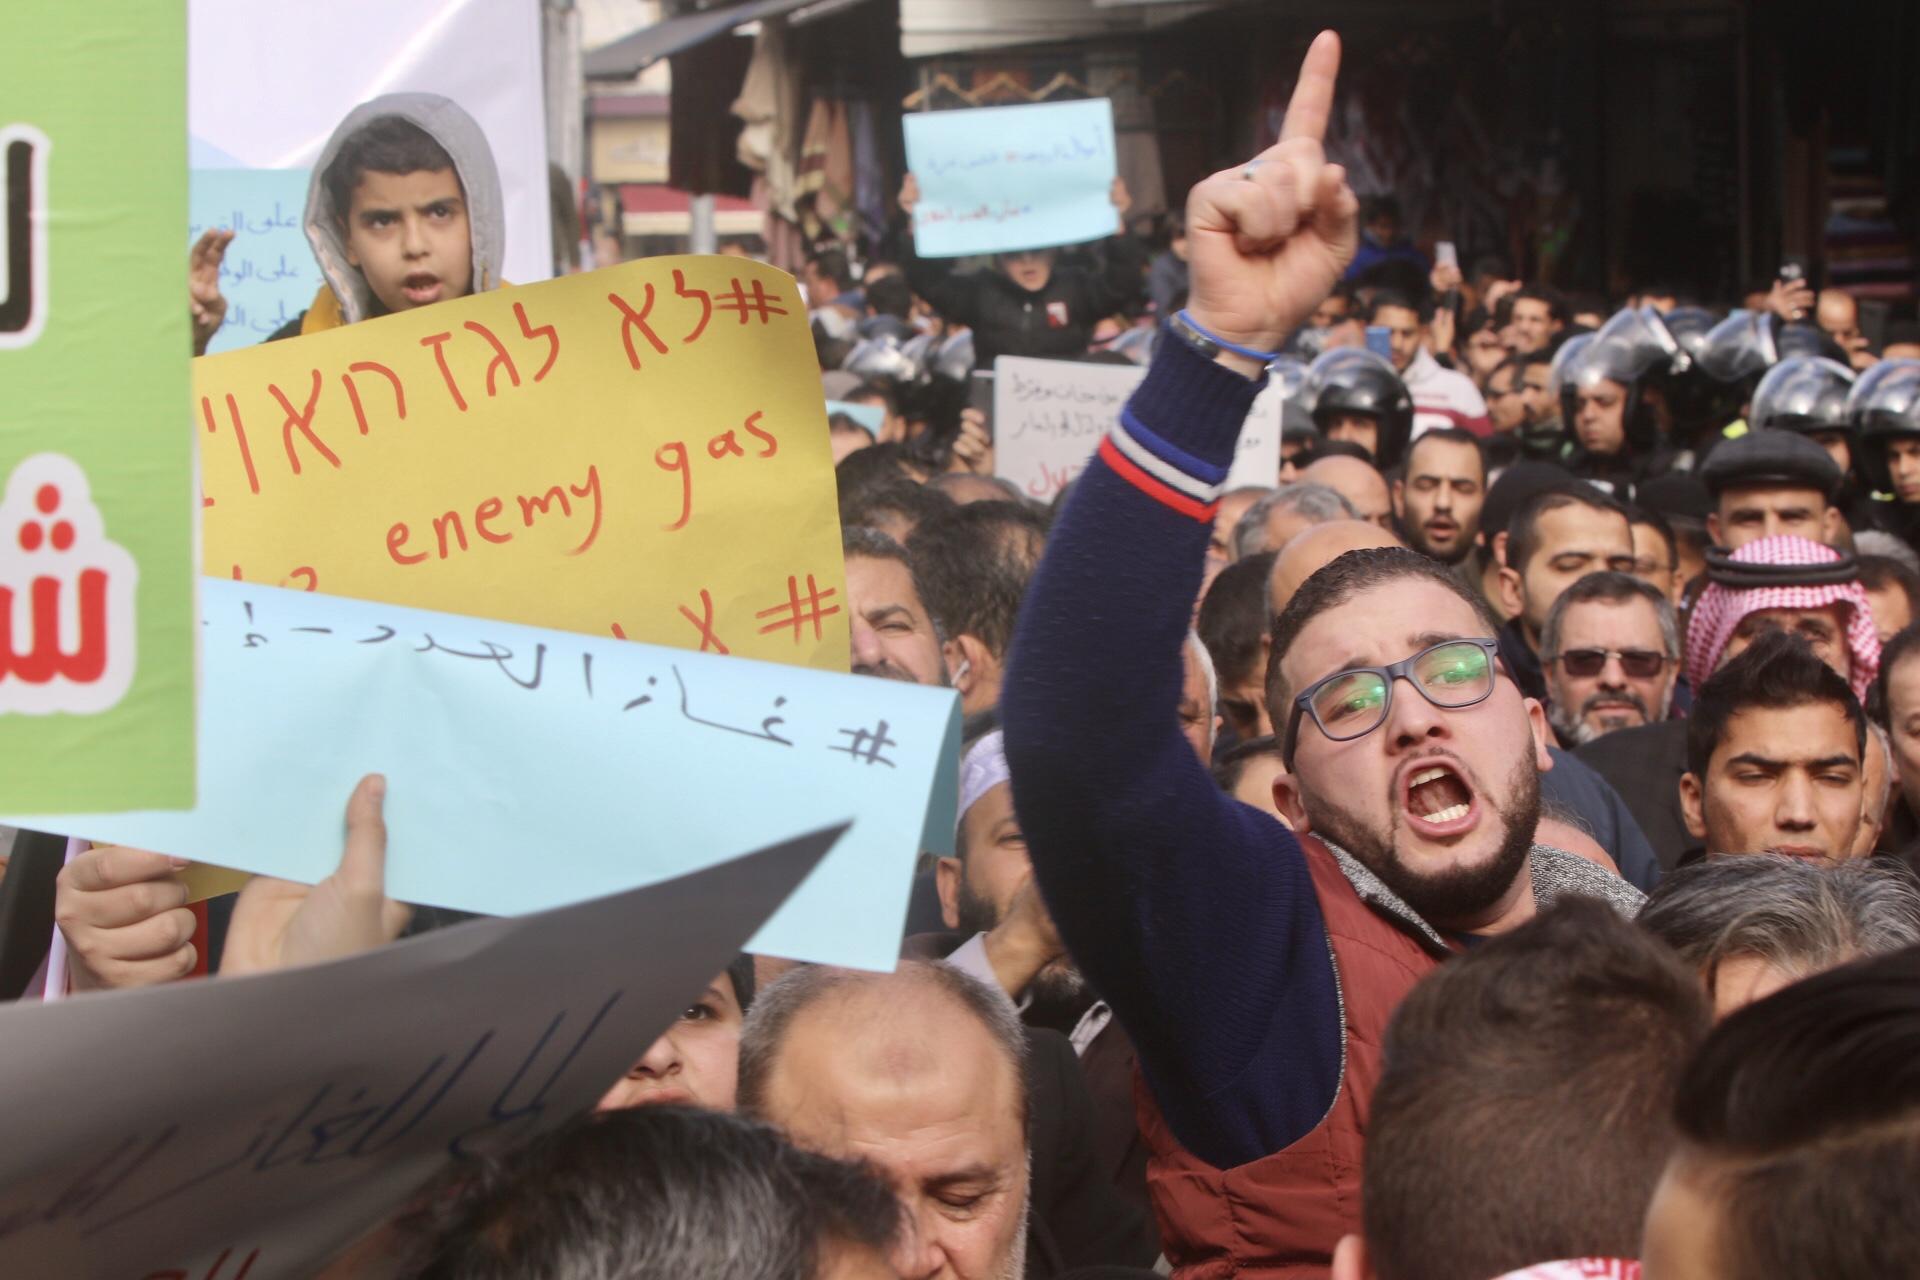 مسيرة في منطقة وسط البلد في العاصمة عمّان شارك فيها أحزاب وفعاليات شعبية تطالب بإلغاء اتفاقية الغاز. (صلاح ملكاوي/ المملكة)